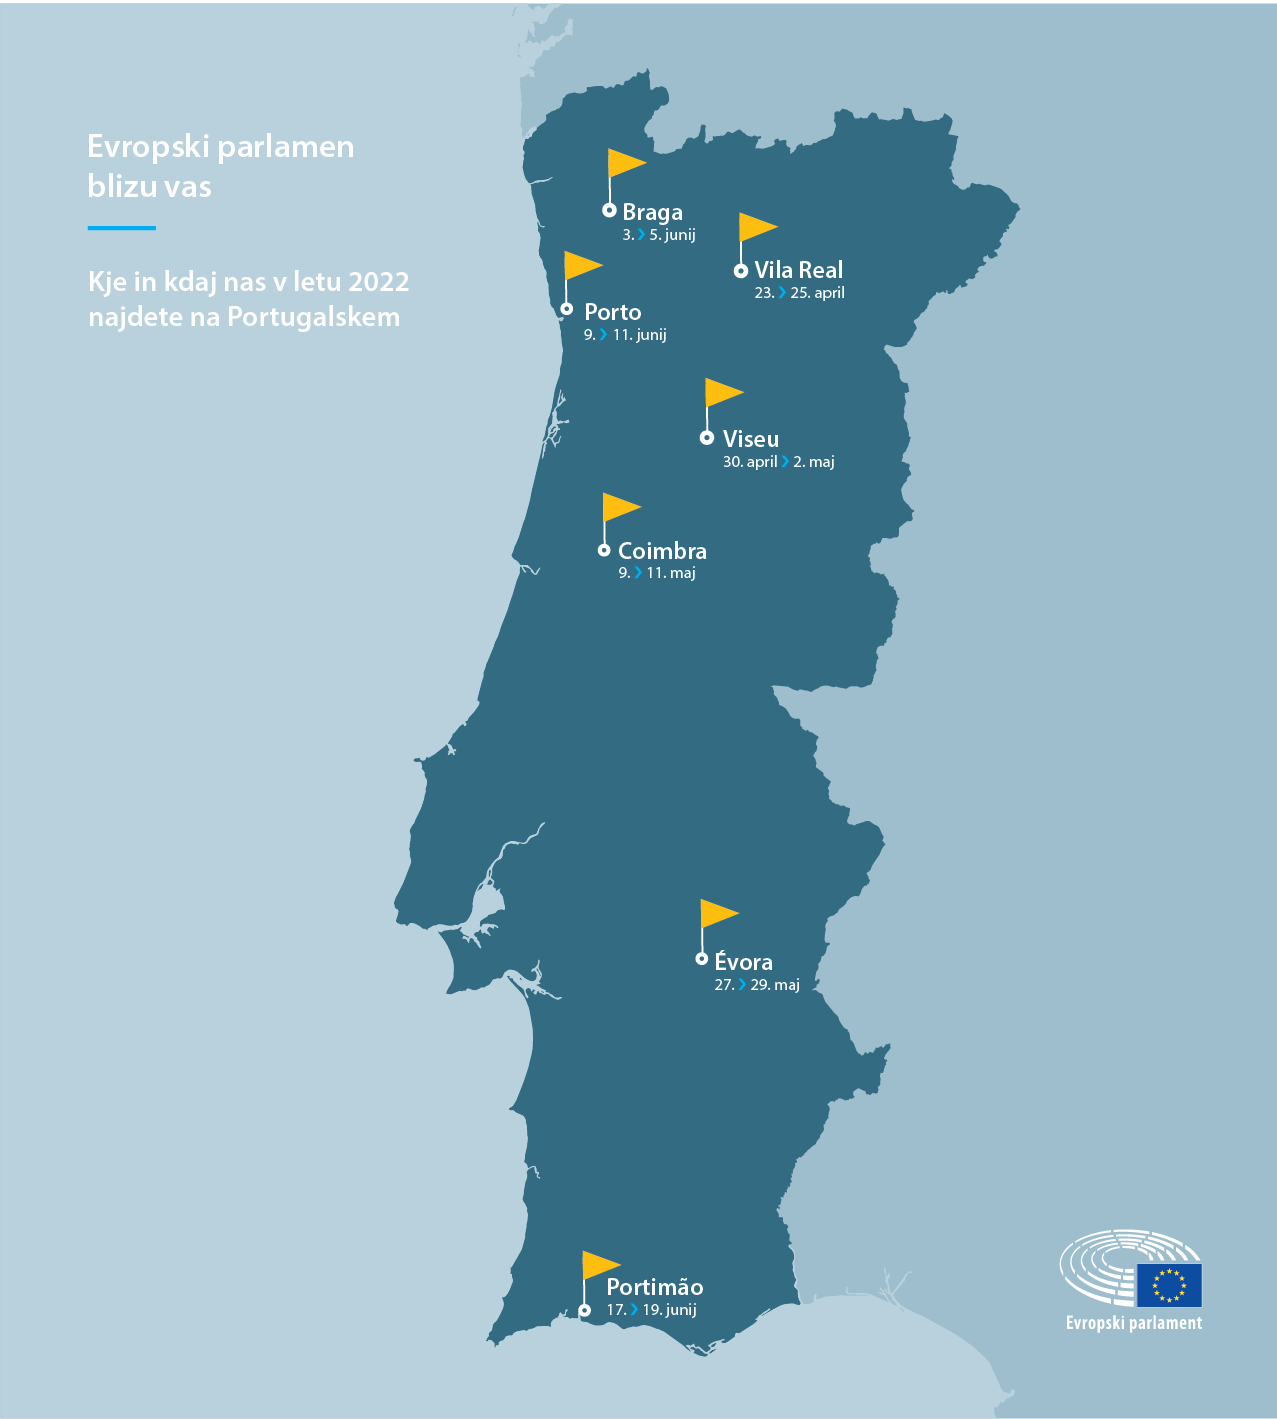 Kje in kdaj nas v letu 2022 najdete na Portugalskem